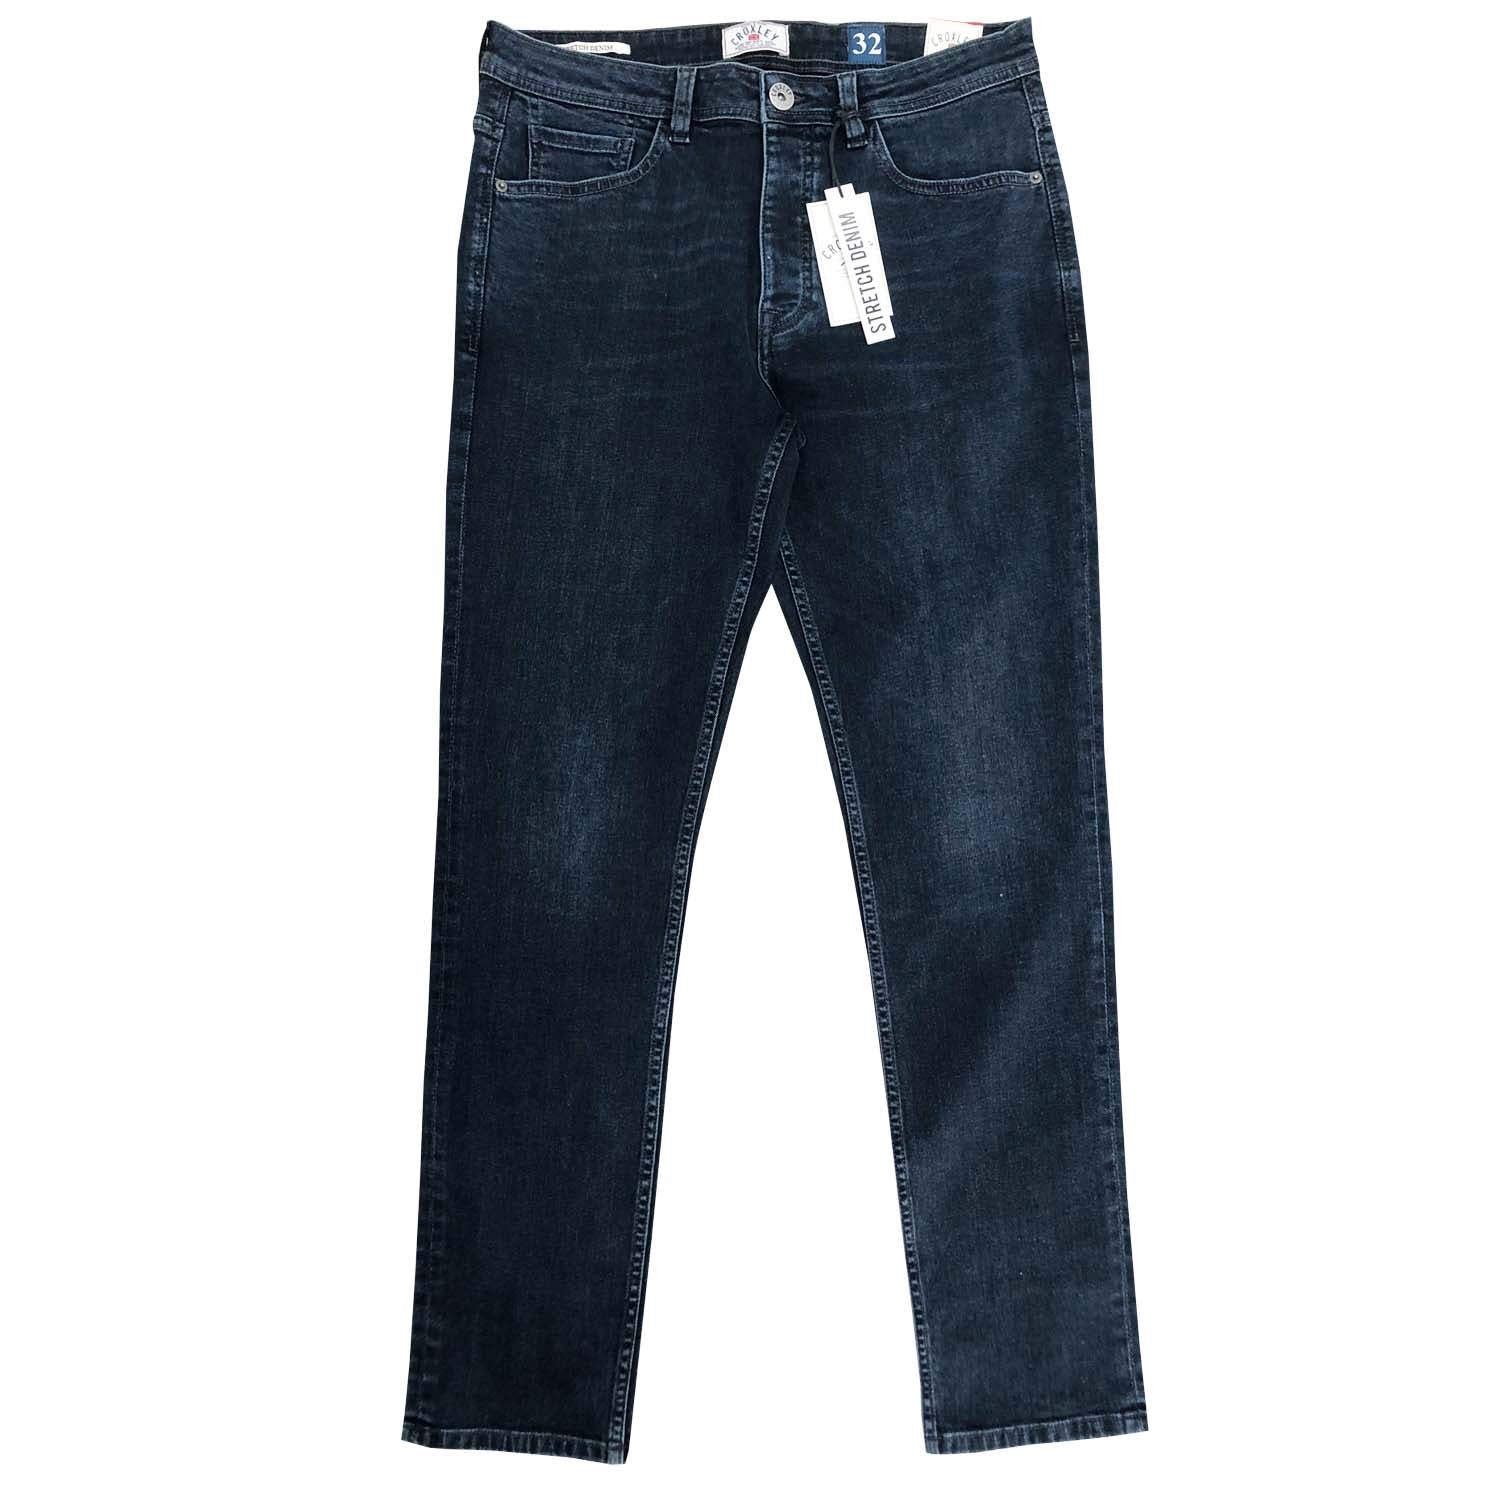 CROXLEY - Slim Fit Jean - LabelledUp.com